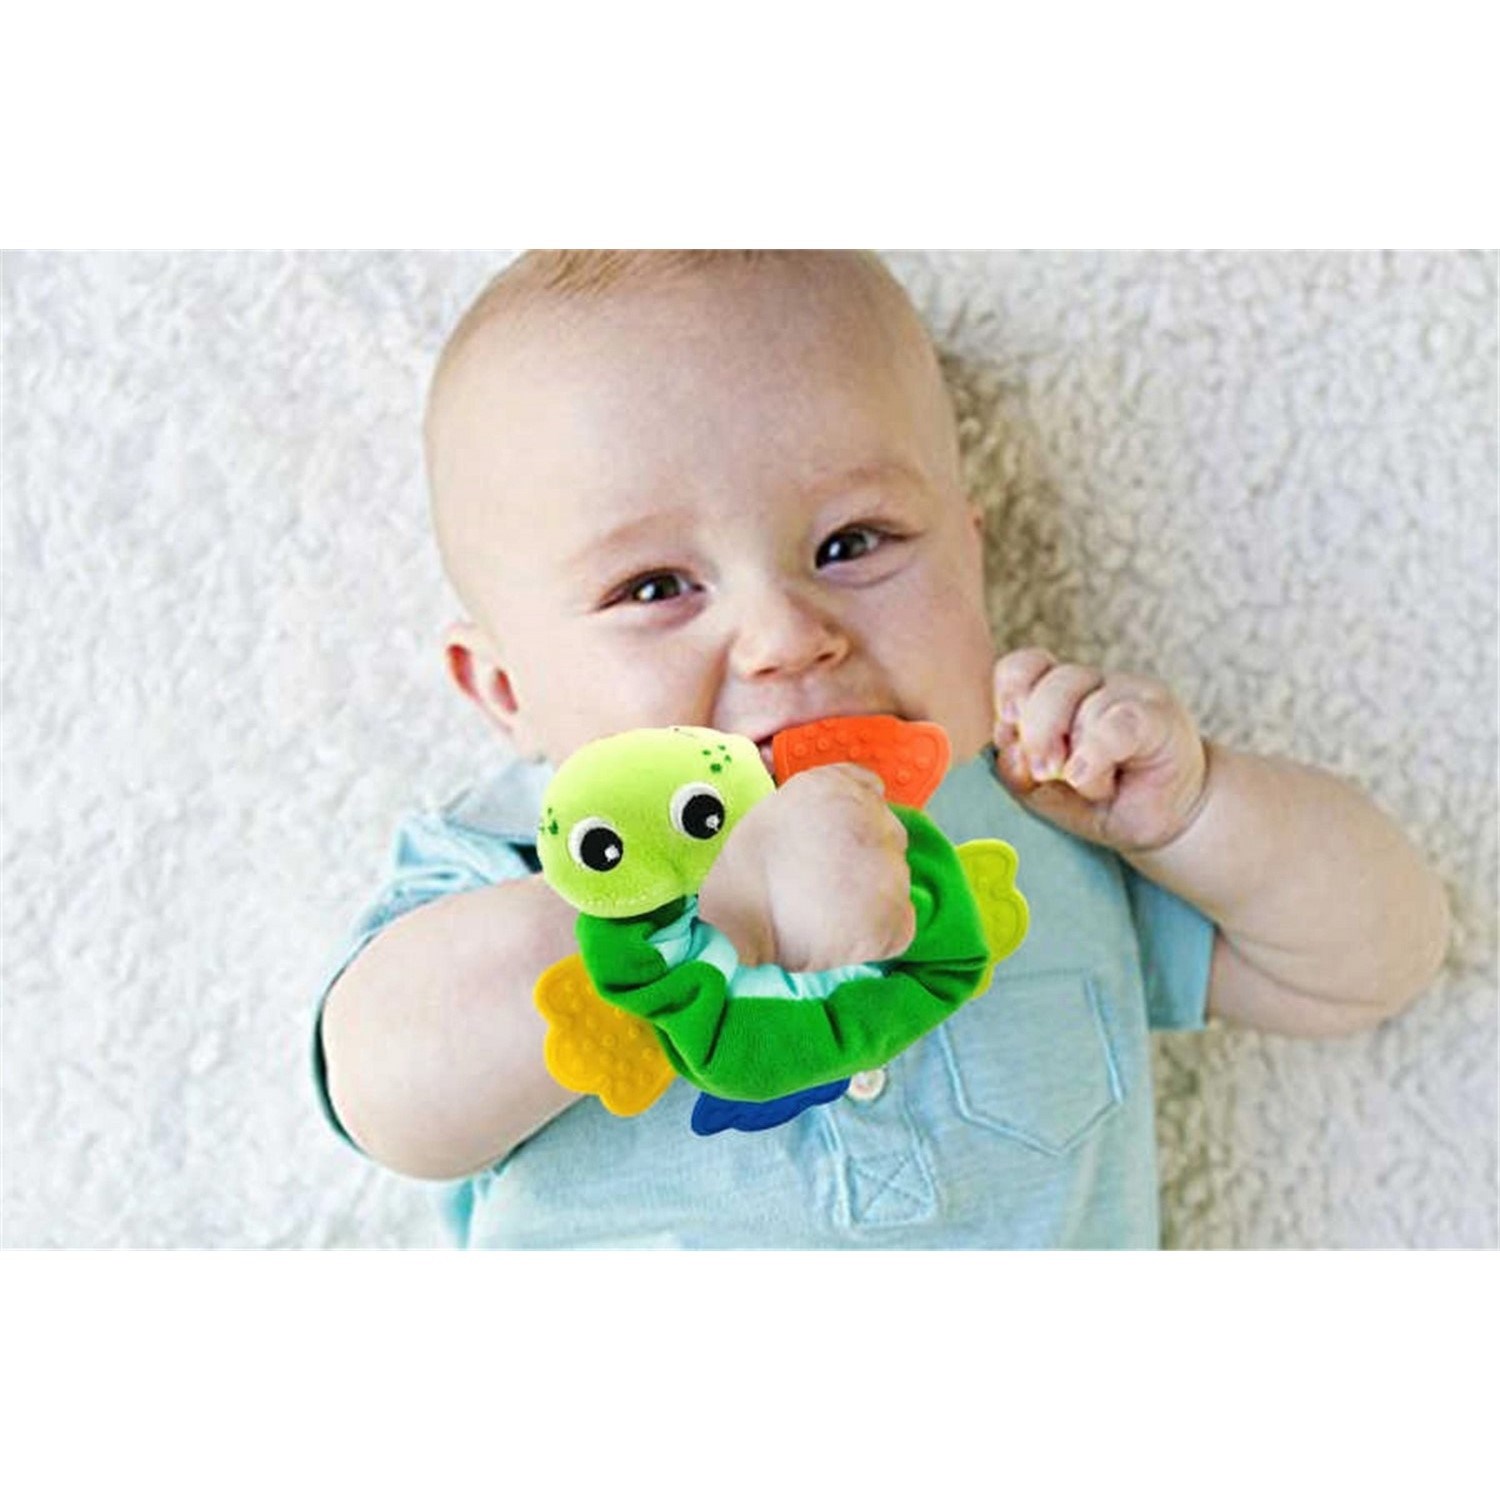 Babycim Bileklik Sevimli Diş Kaşıyıcı Oyuncak 7025 Yeşil-Sarı